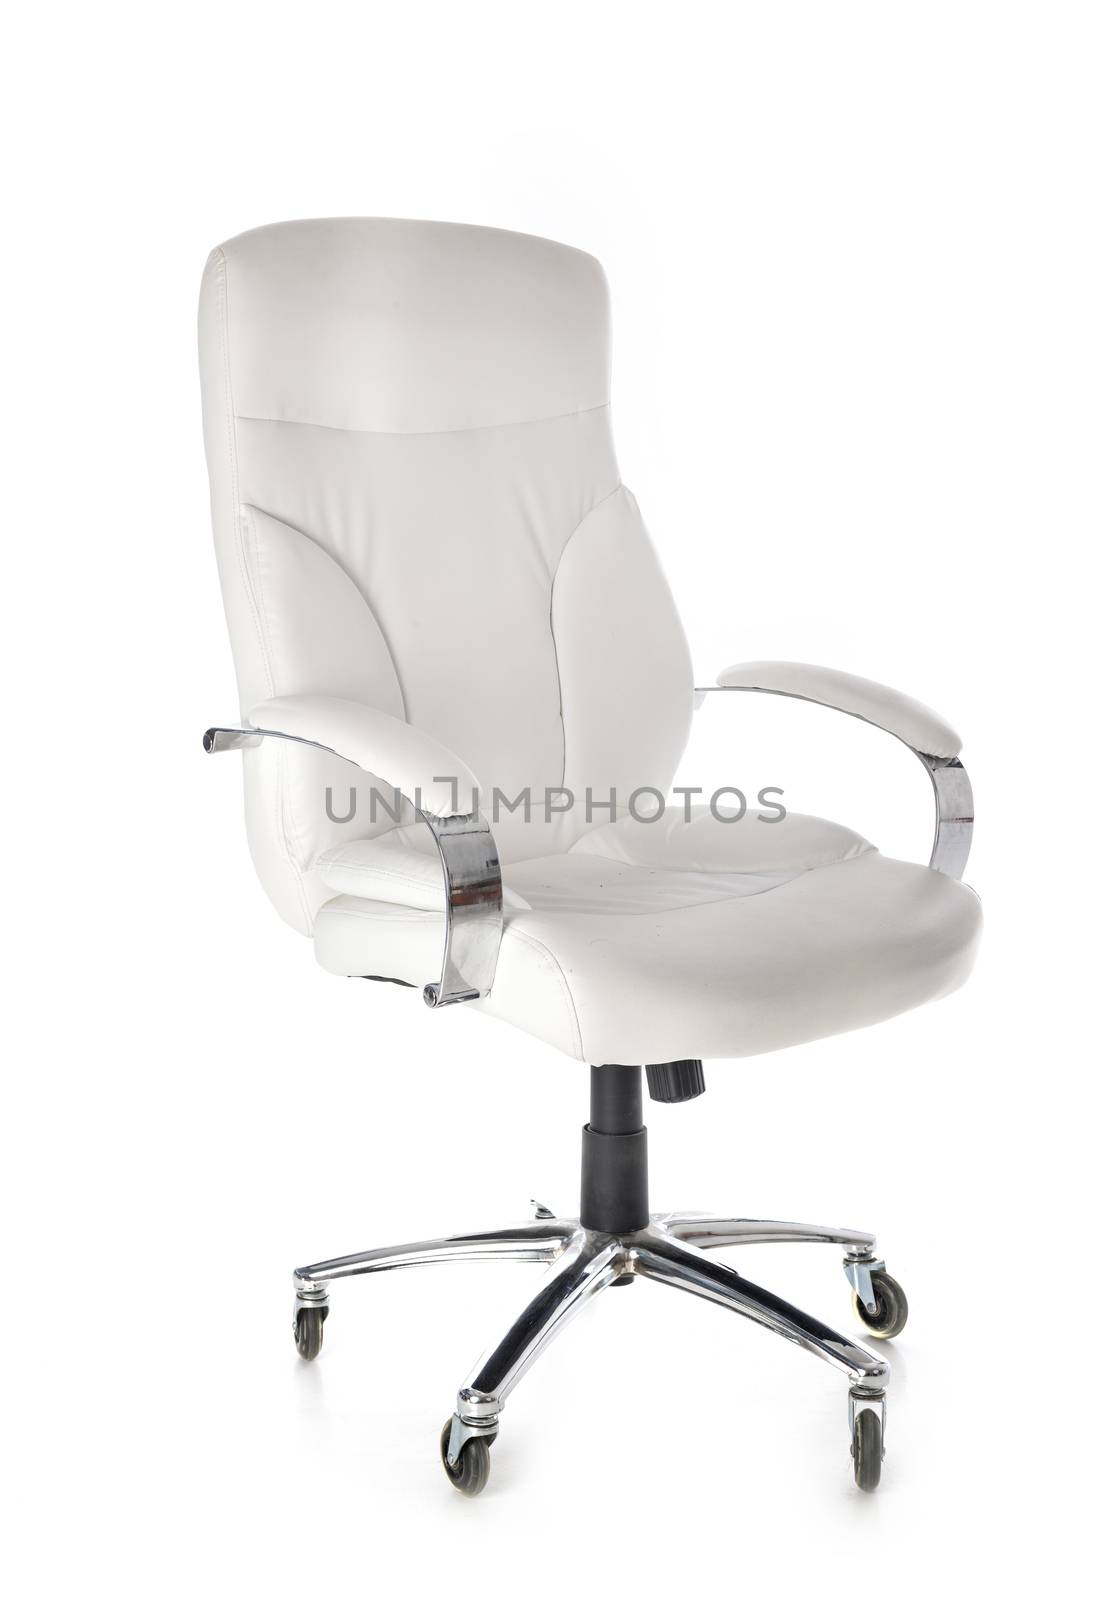 desk chair in studio by cynoclub